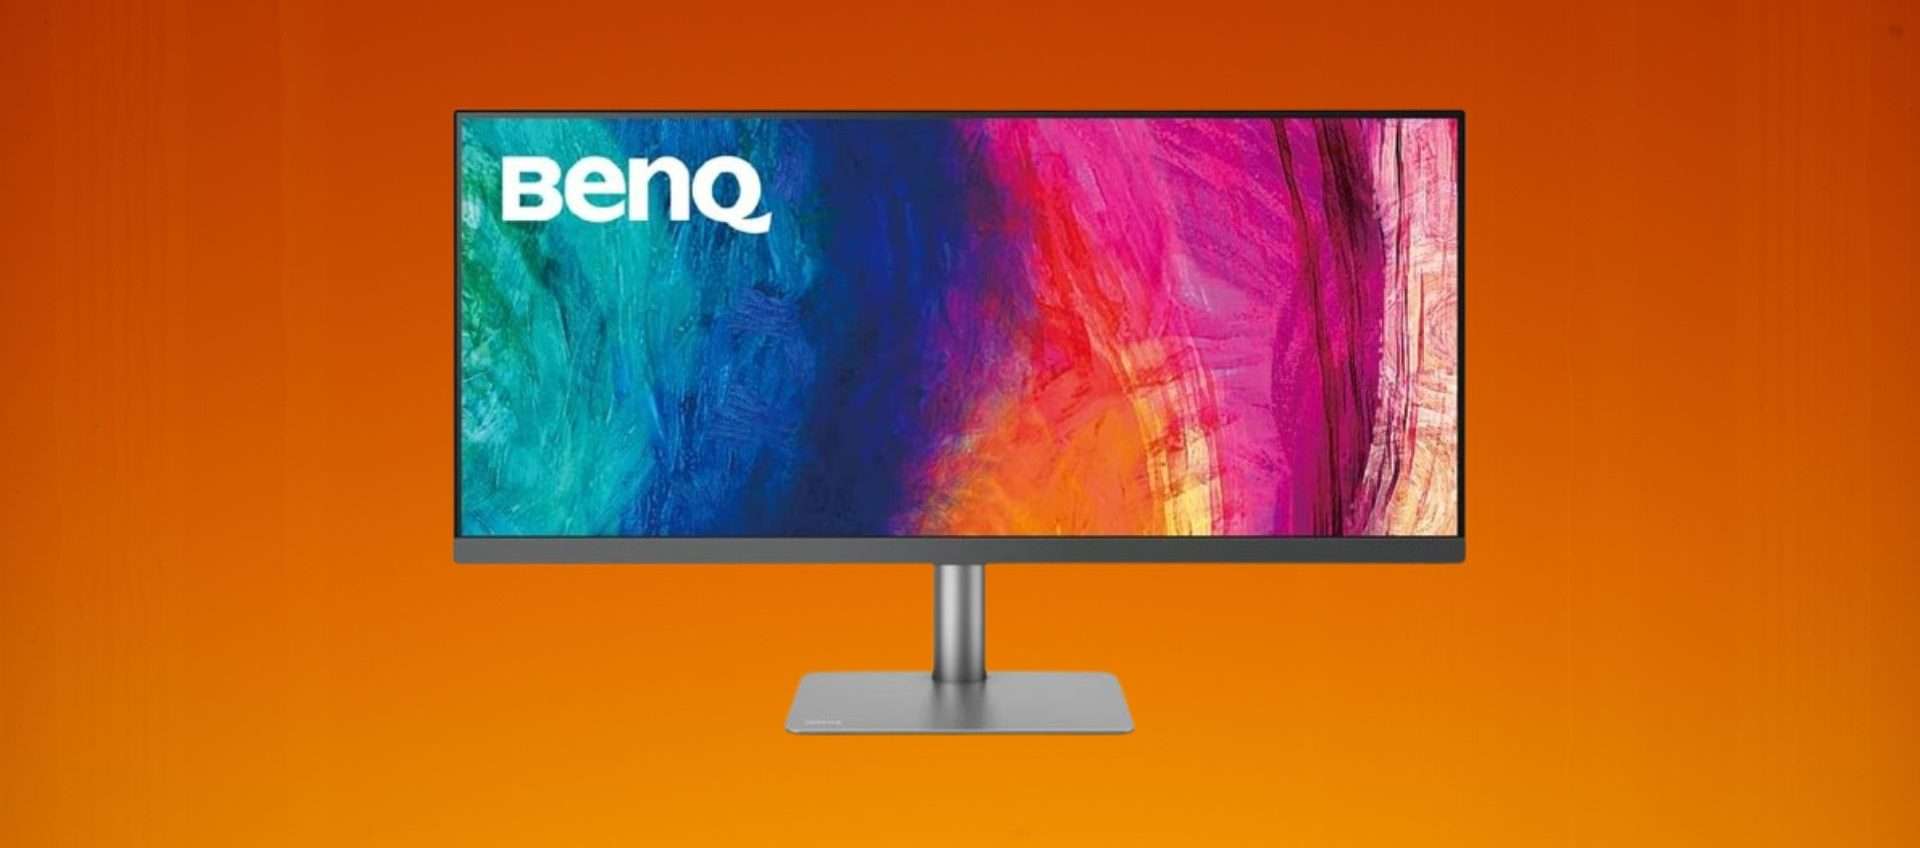 BenQ UltraWide Designer: monitor superbo in offerta con uno sconto del 36%